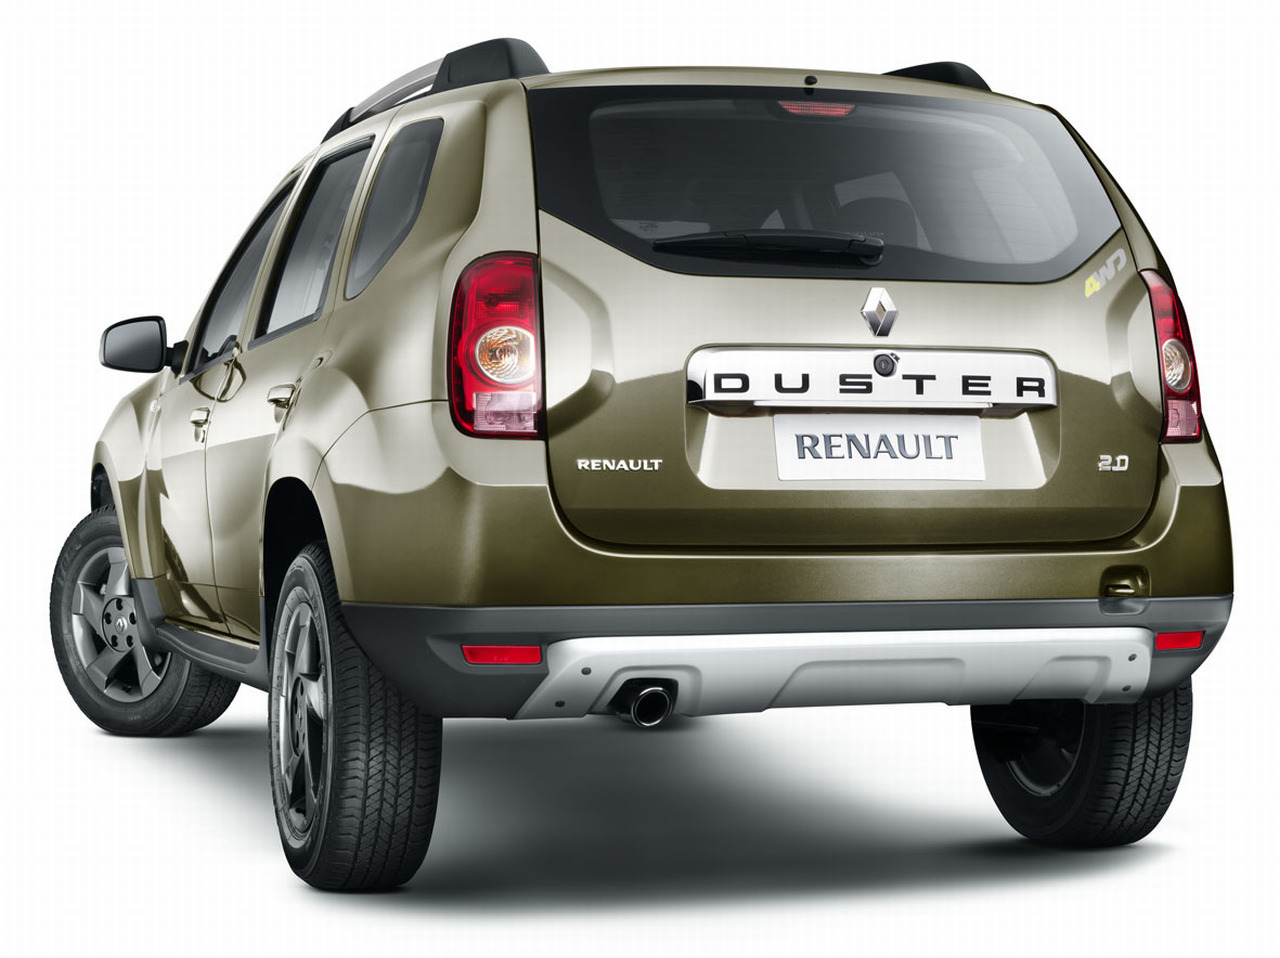 Vanzarile lui Renault Duster vor demara la finalul anului, pentru inceput in Brazilia si Argentina